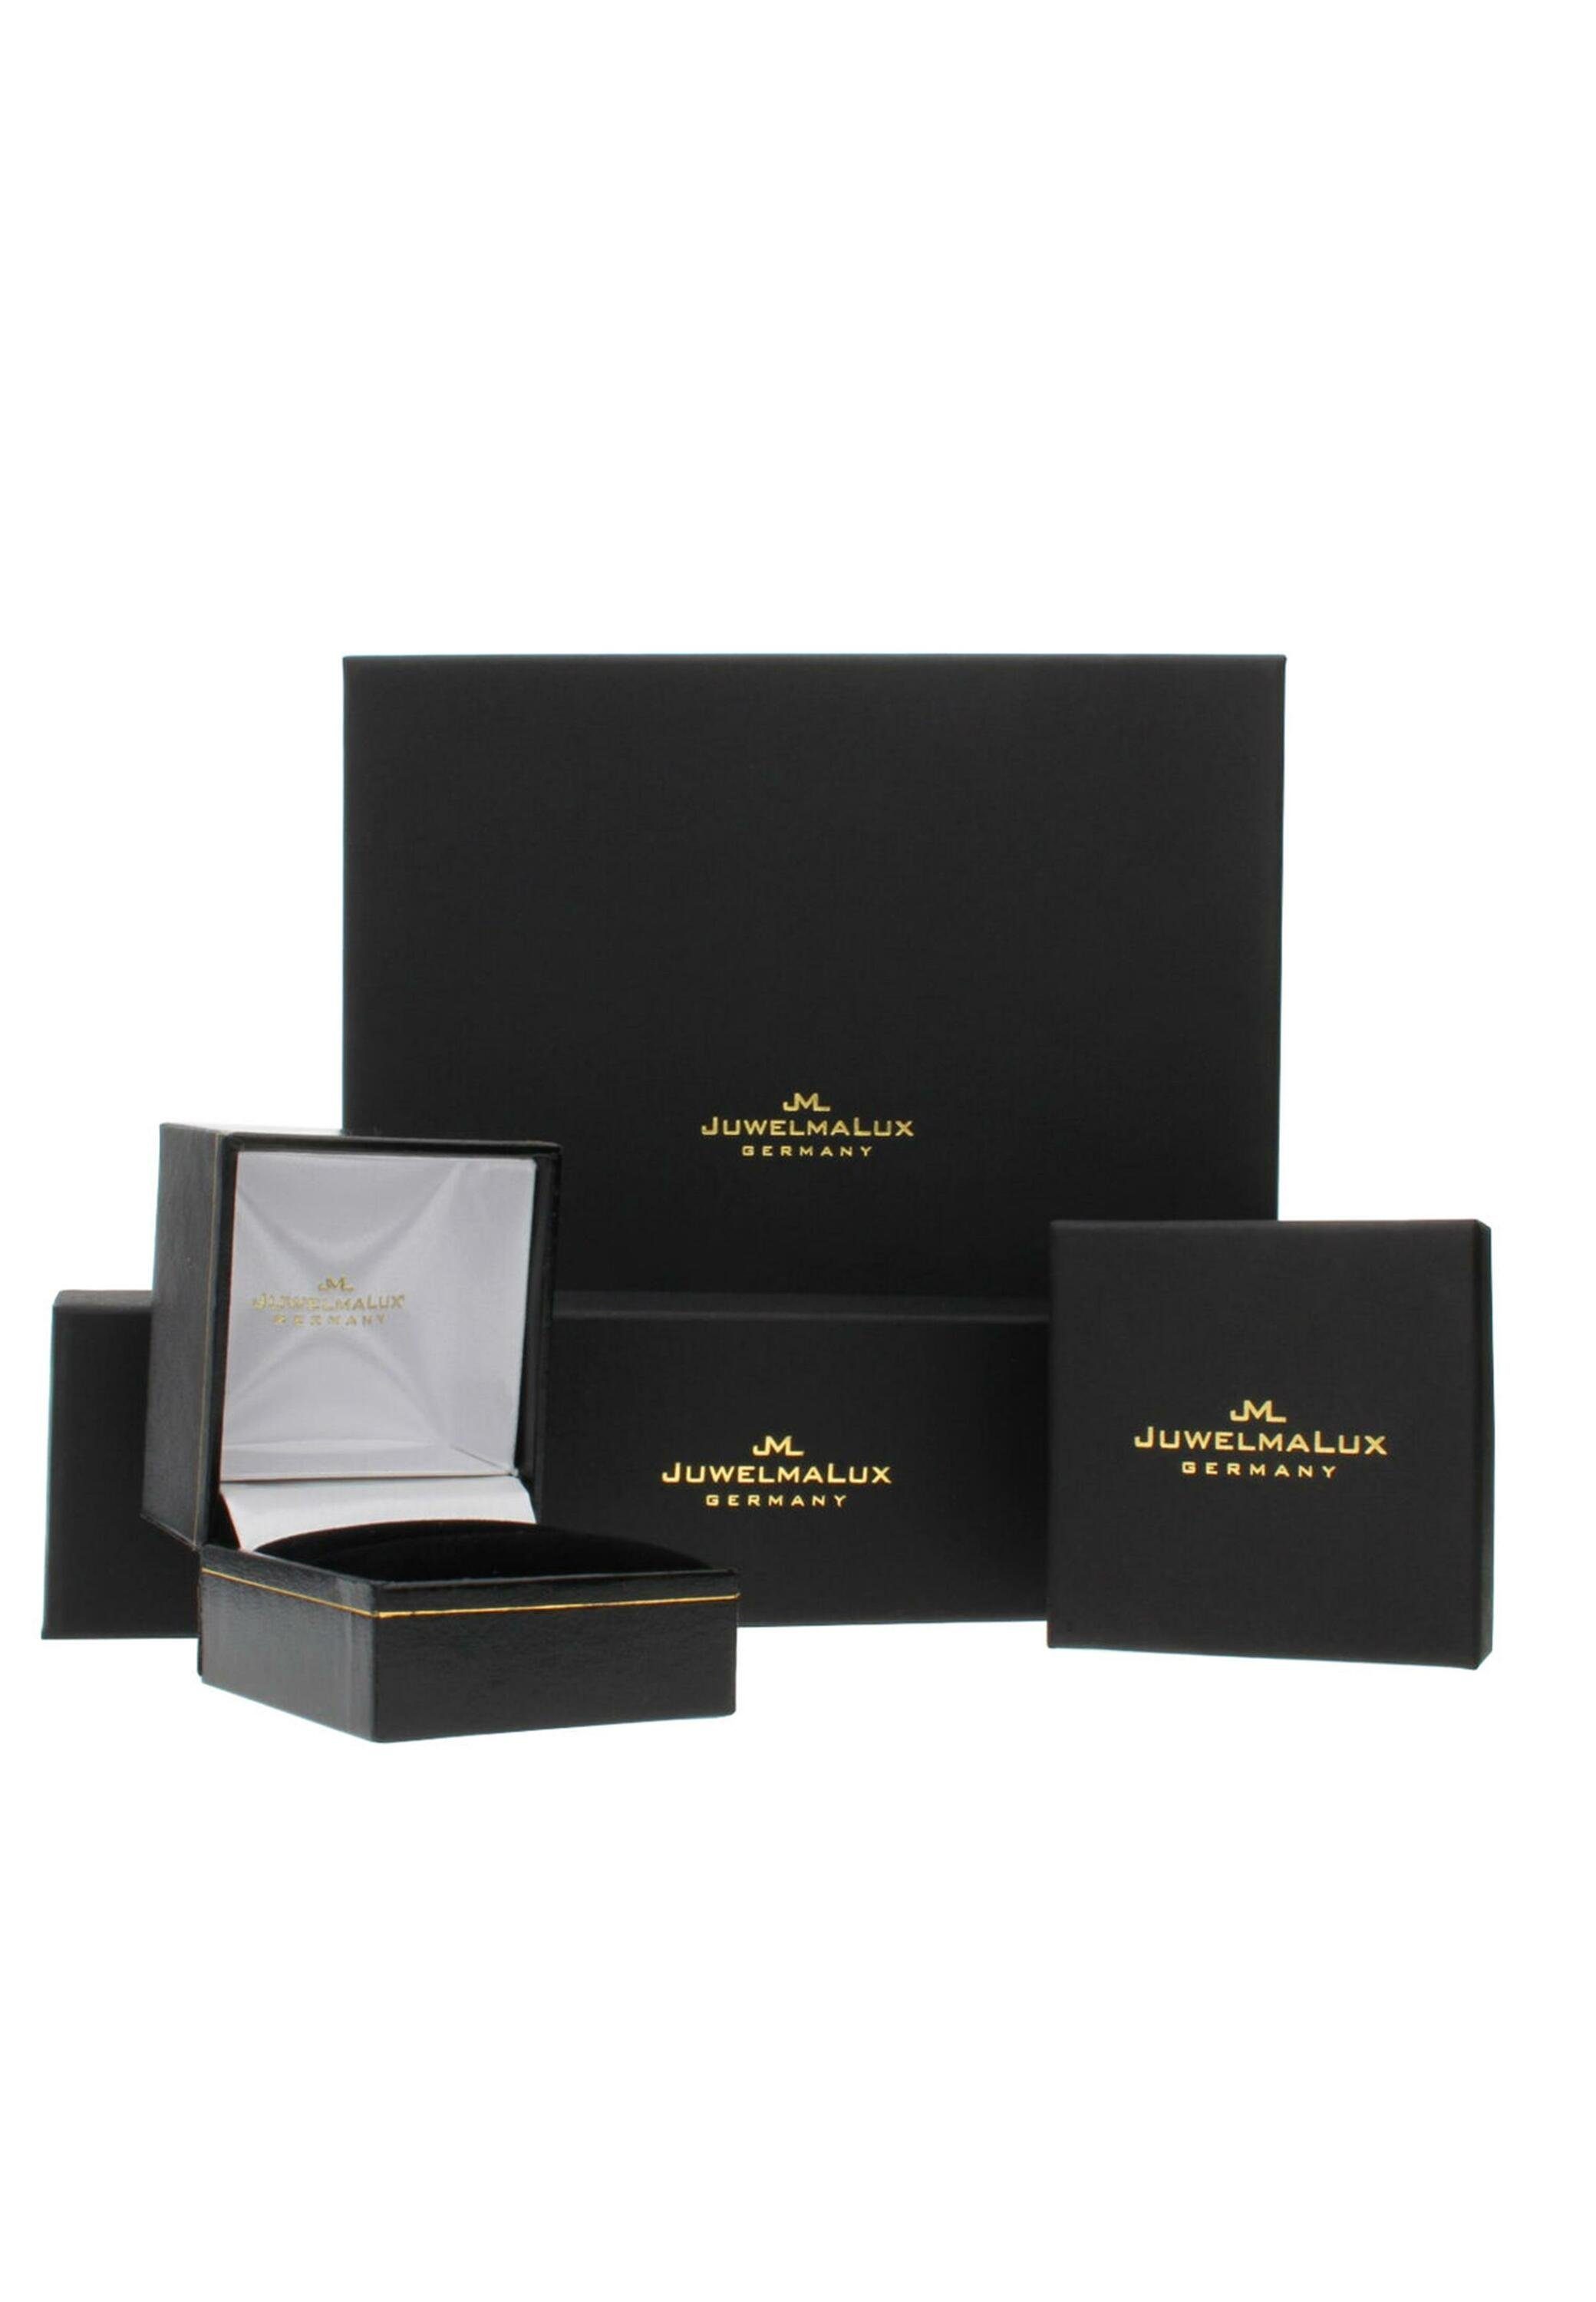 Silber Silberkette Kette Figaro JuwelmaLux 925/000